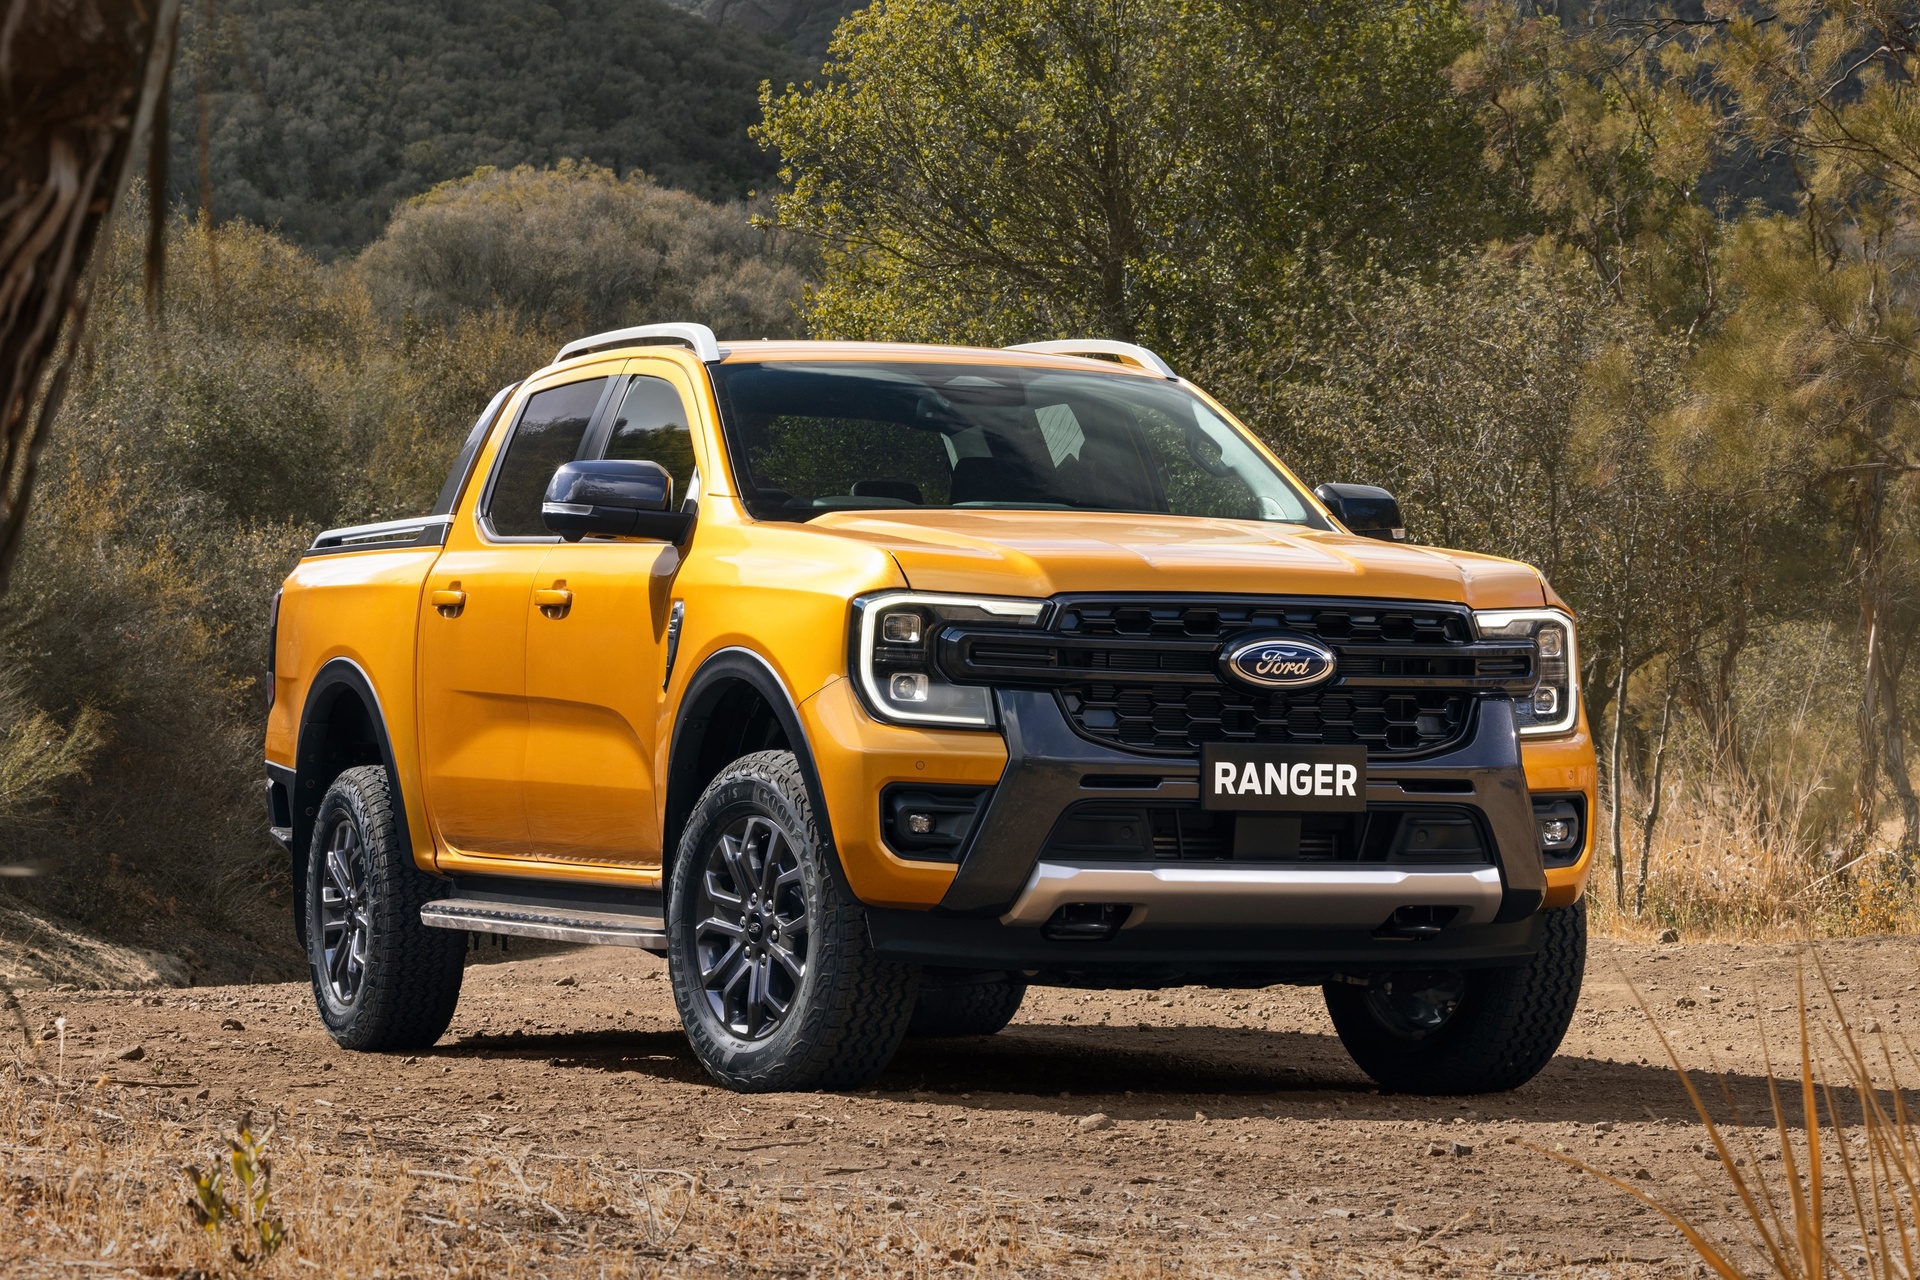 Mẫu xe thứ hai trong top xe bán chạy tháng 6.2023 là mẫu bán tải Ford Ranger với doanh số đạt 1.585 xe (bao gồm cả xe nhập khẩu và xe lắp ráp trong nước). Ranger sau nhiều tháng lùi về vị trí thâos hơn thì đến tháng 6 mới quay lại được vị thế bán chạy của mình. Tháng 5.2023, doanh số của Ford Ranger cũng chỉ đứng ở vị trí thứ 6 với doanh số là 932 xe. Như vậy, trong tháng 6 mẫu xe này đã vươn lên 5 bậc so với tháng trước. Ảnh: Ford